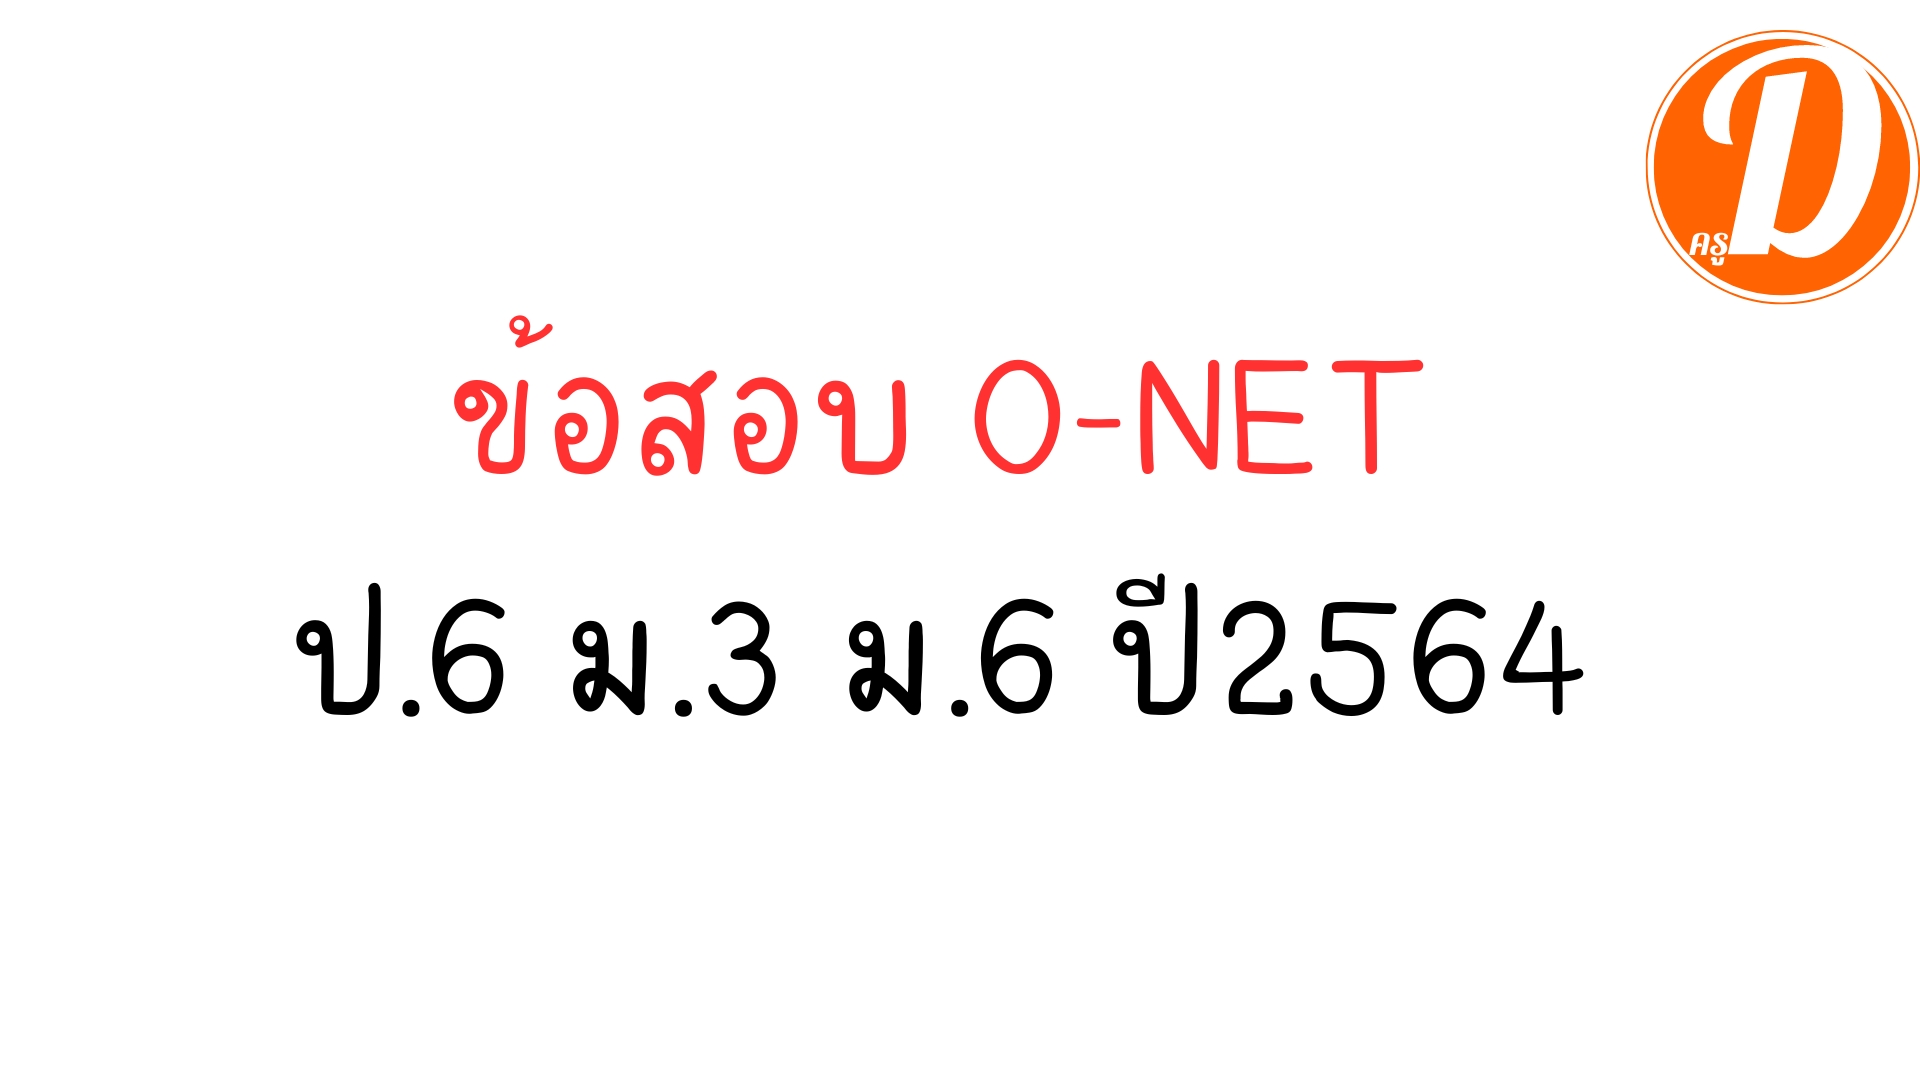 ข้อสอบ o-net ป.6 ม.3 ม.6 ปีการศึกษา 2564 พร้อมเฉลย ที่ใช้สอบเมื่อปี 2565 ที่ผ่านมา